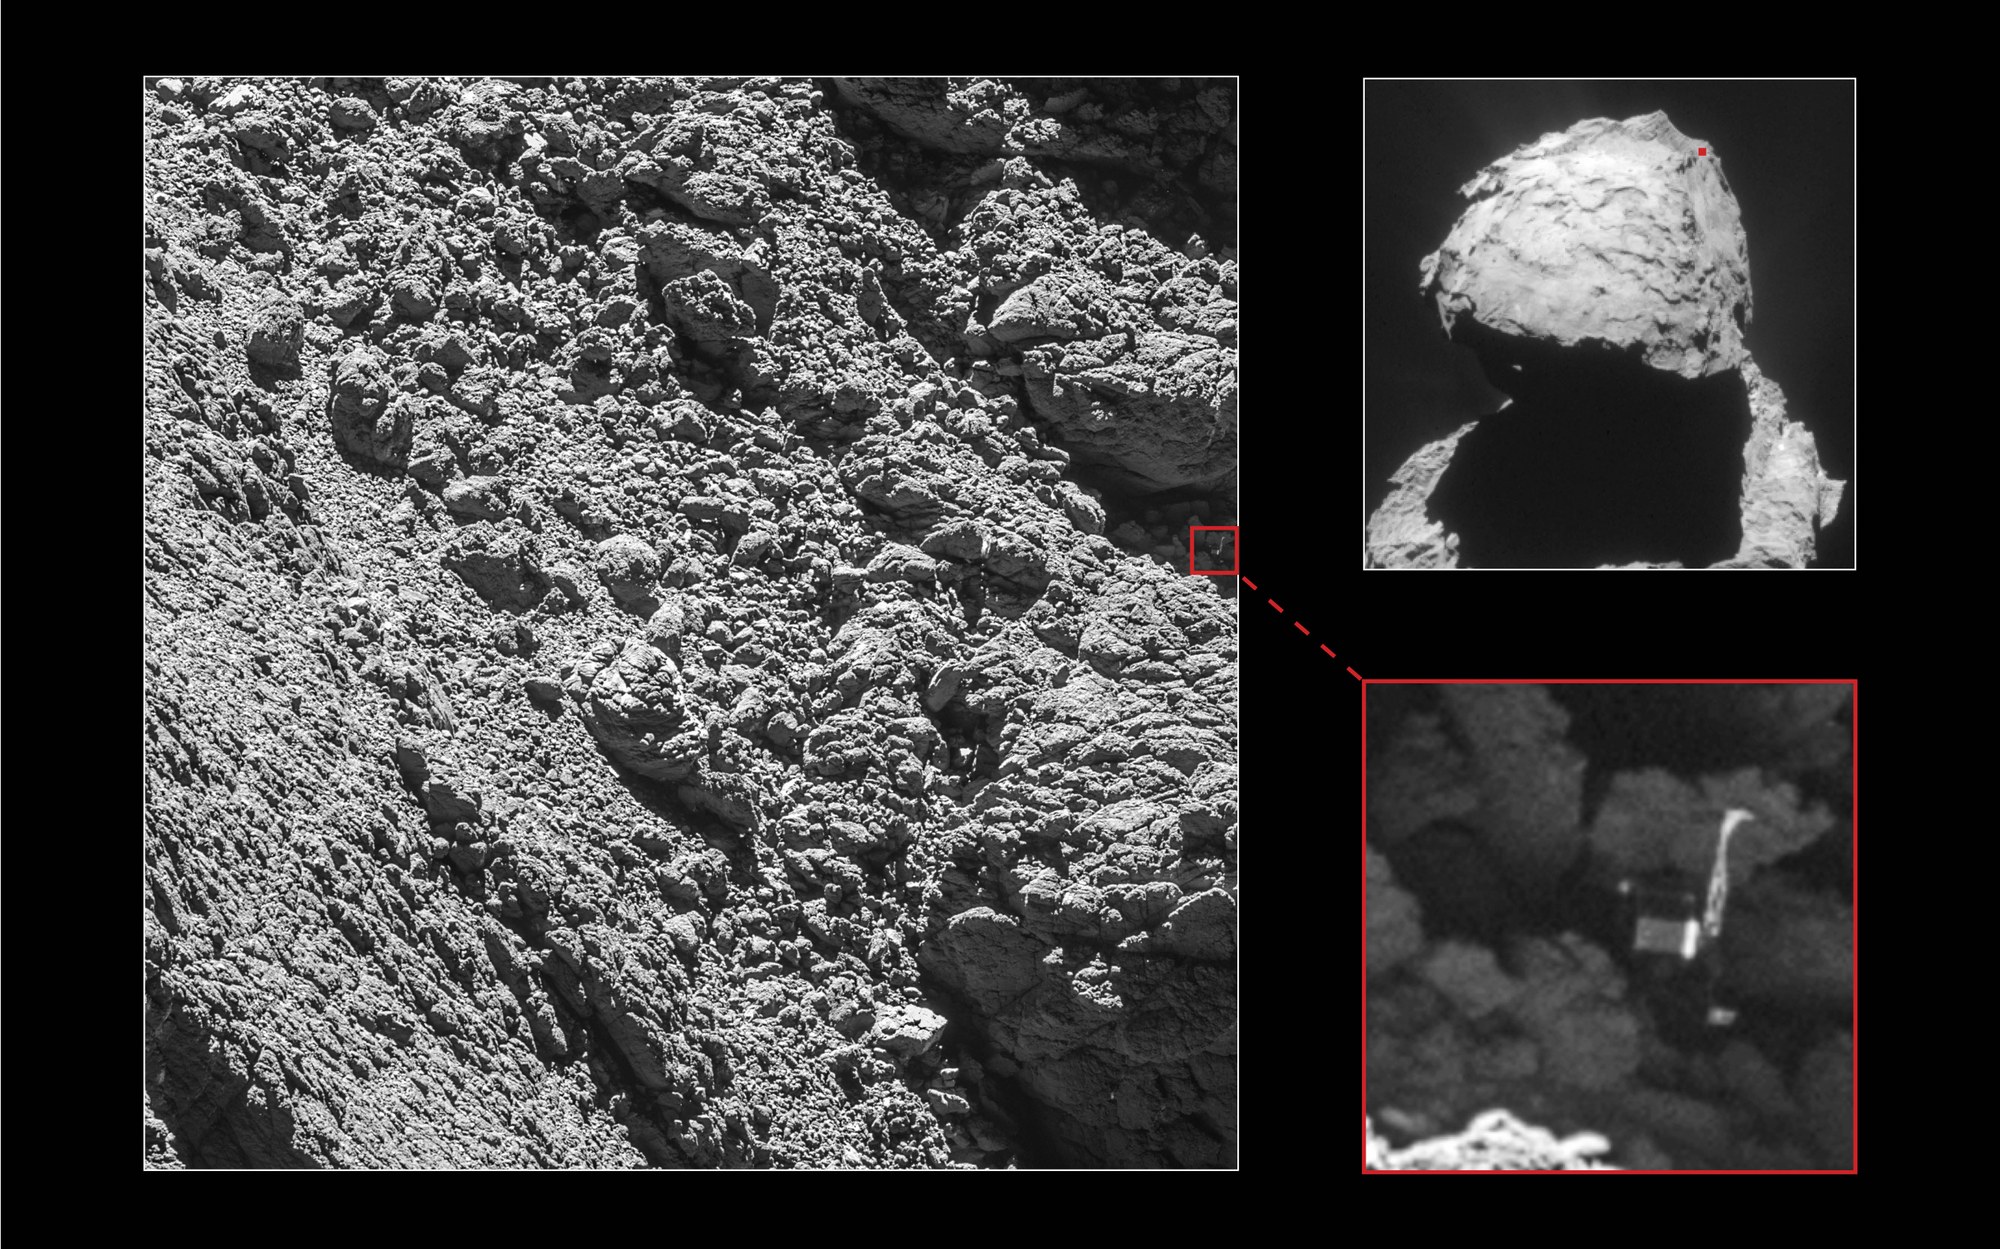 In Vorbereitung des Missionsendes wurde der Rosetta-Orbiter zeitweise bis auf zwei Kilometer nahe an den Kometen herangeführt